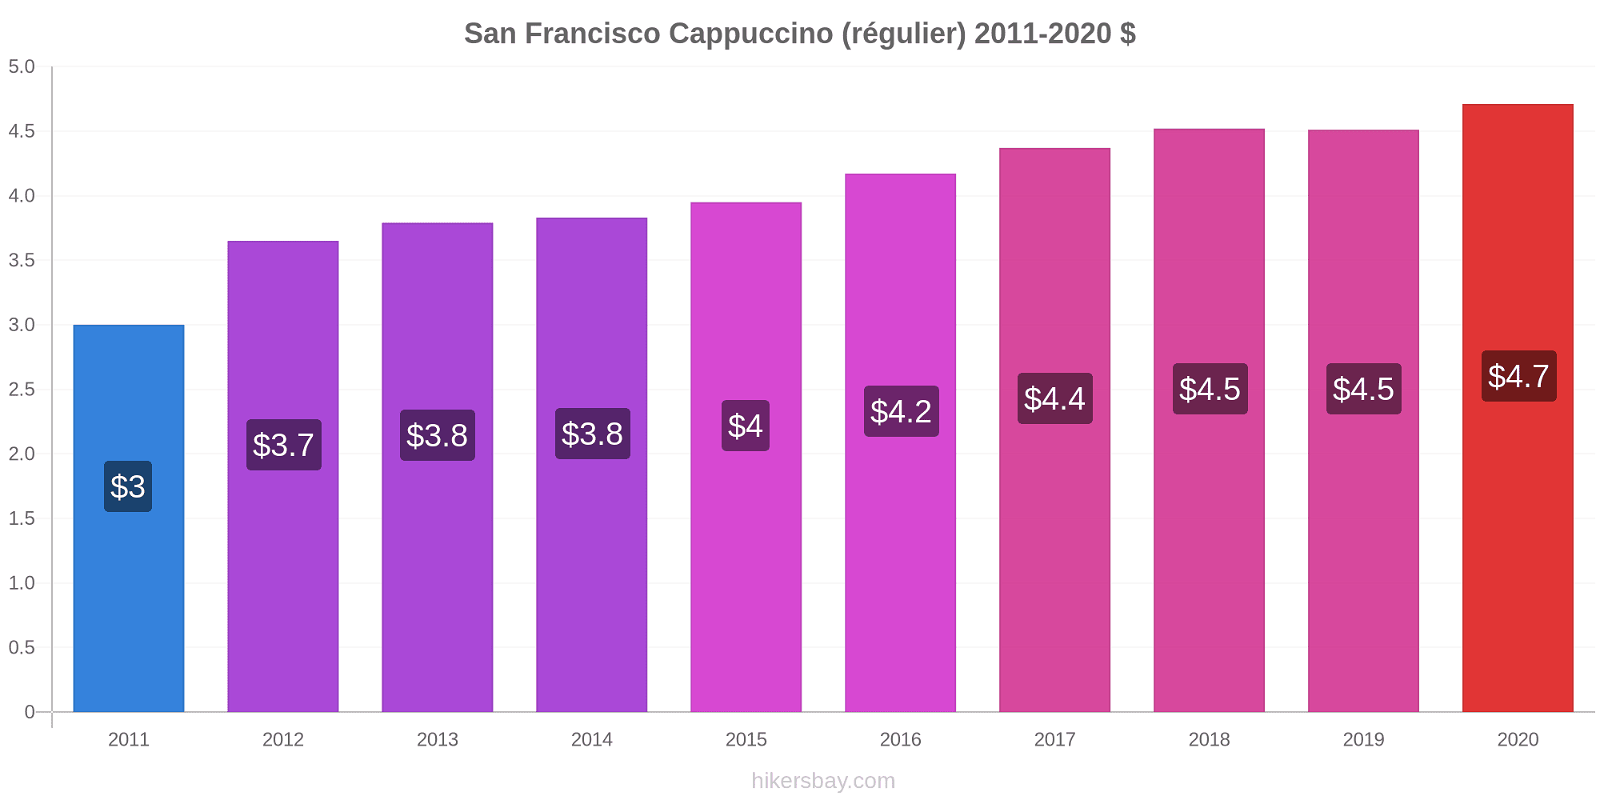 San Francisco changements de prix Cappuccino (régulier) hikersbay.com